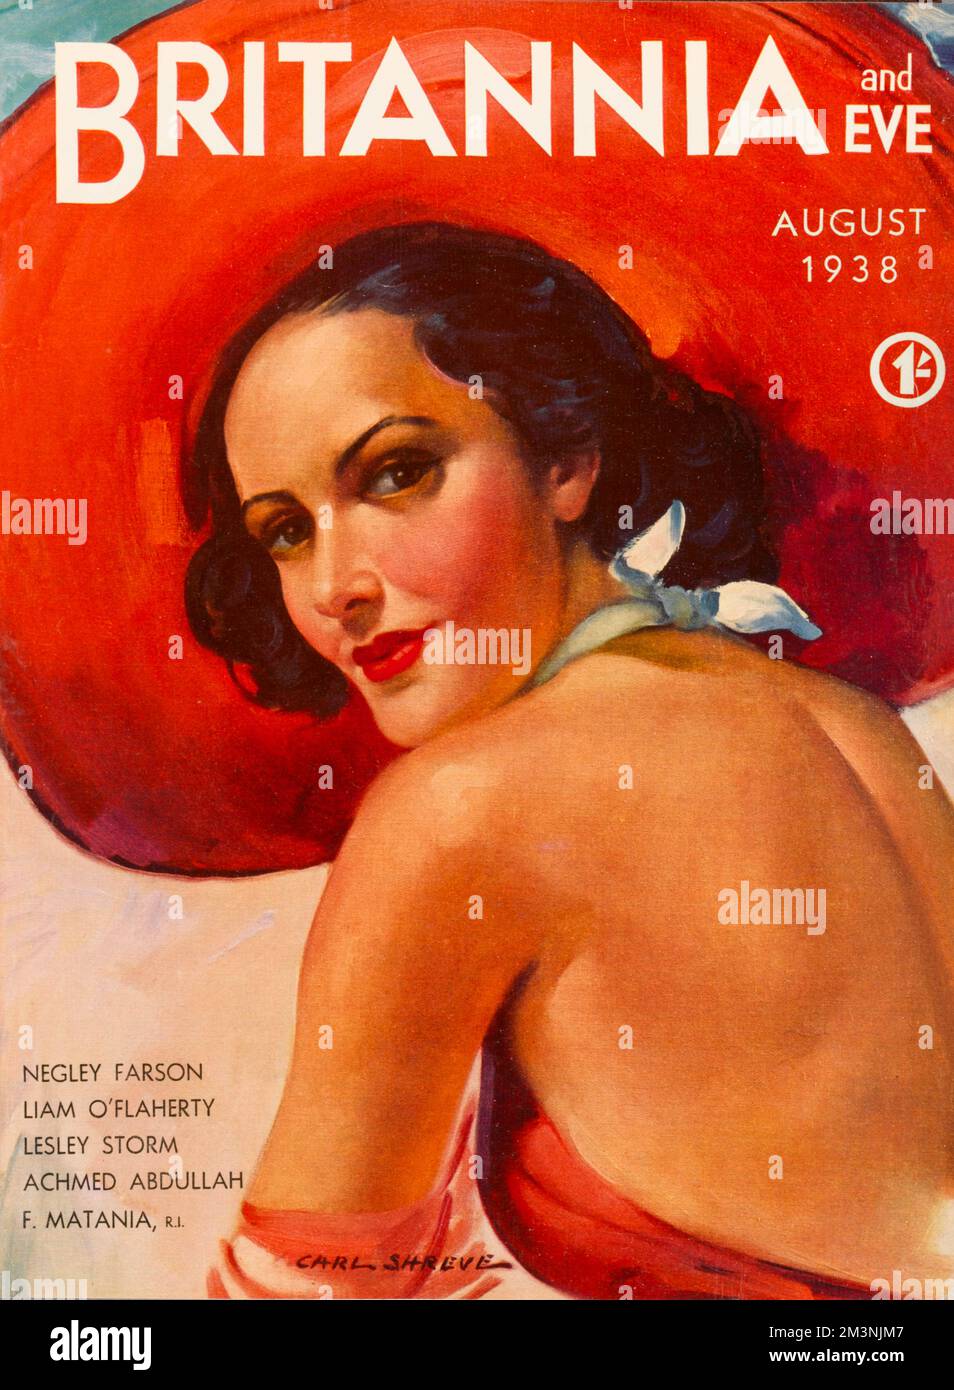 Illustration de la couverture avec une belle femme brune portant un énorme chapeau rouge et un maillot de bain assorti. Date: 1938 Banque D'Images